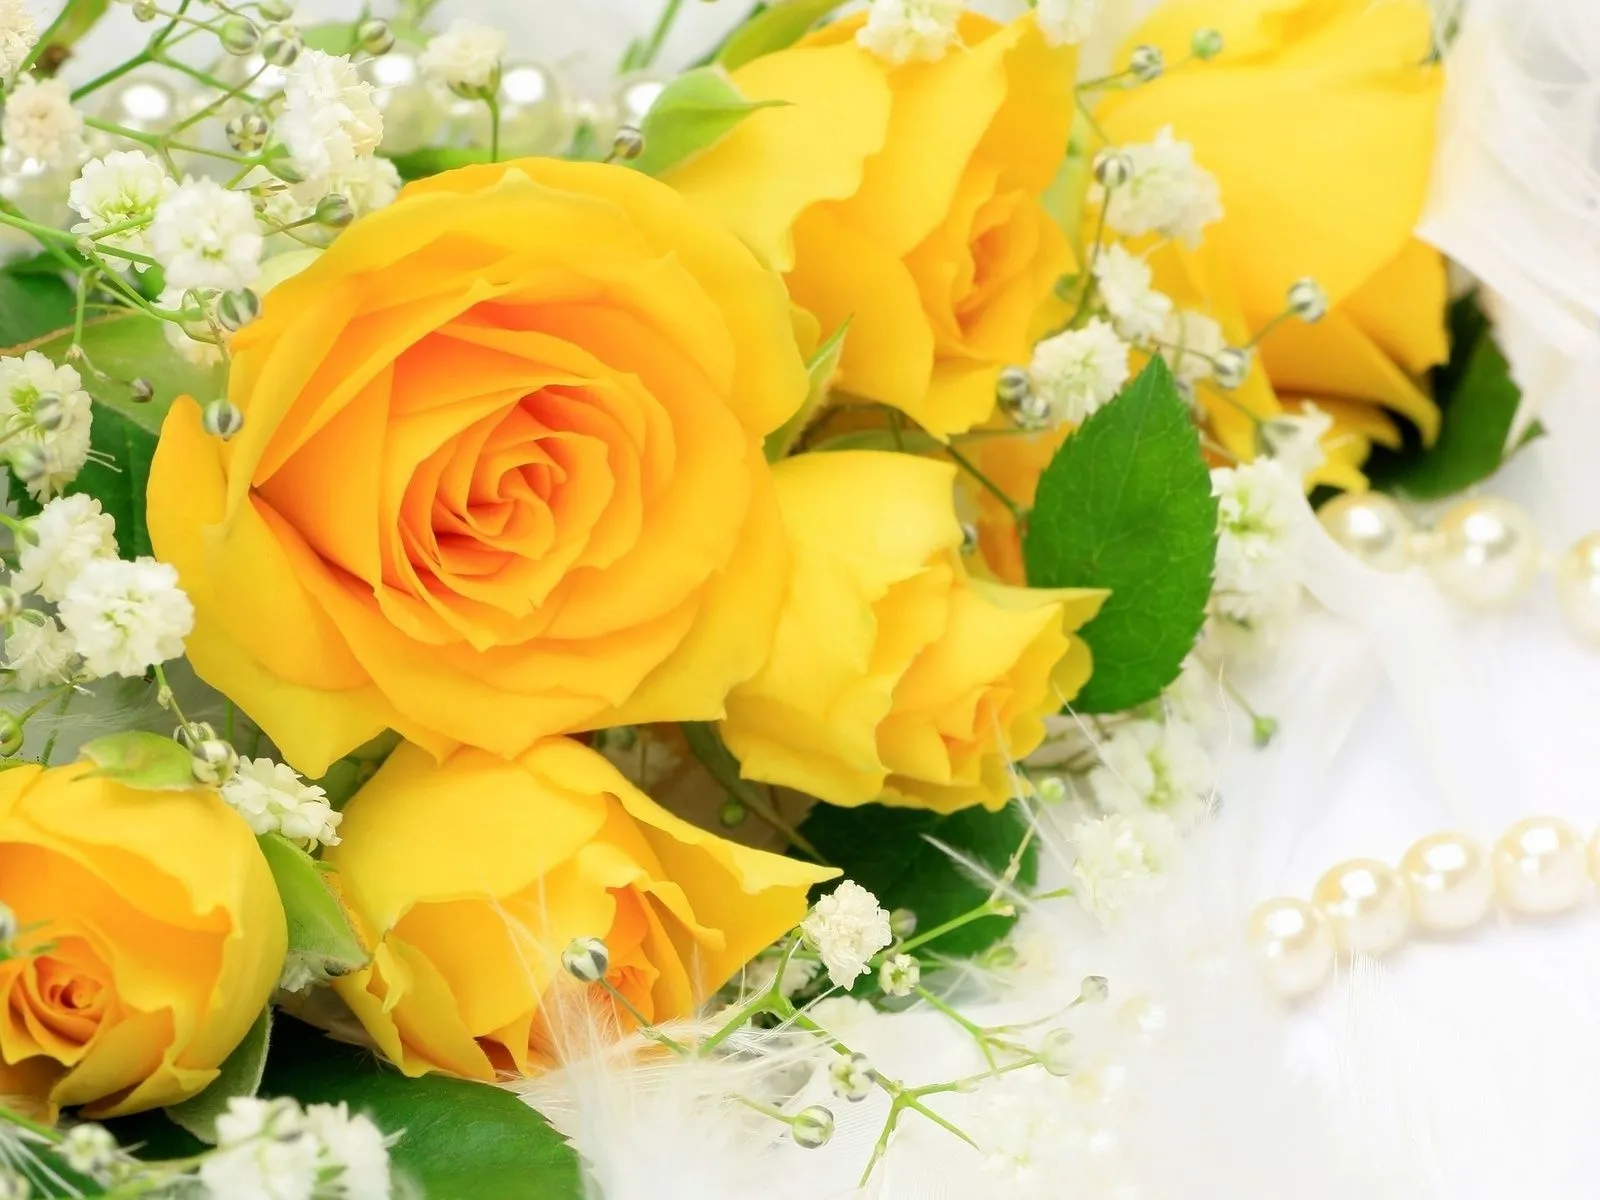 Fotos de rosas amarillas para facebook ~ Mejores Fotos del Mundo ...